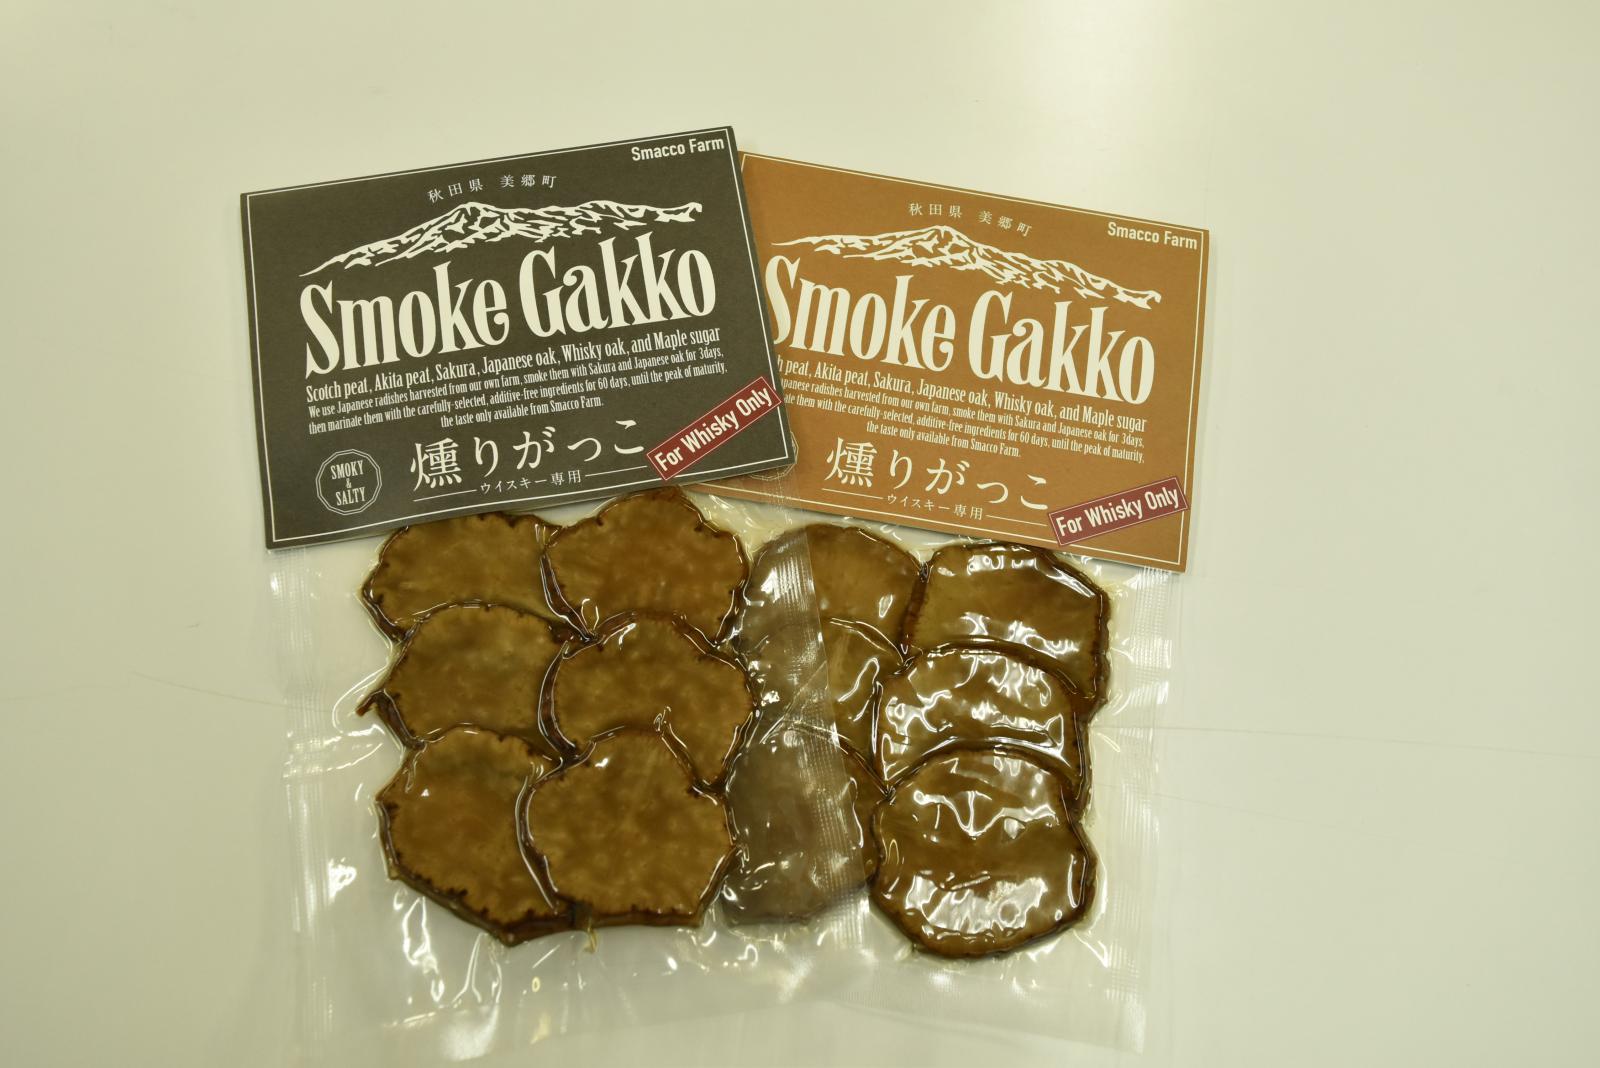 Smoke Gakko